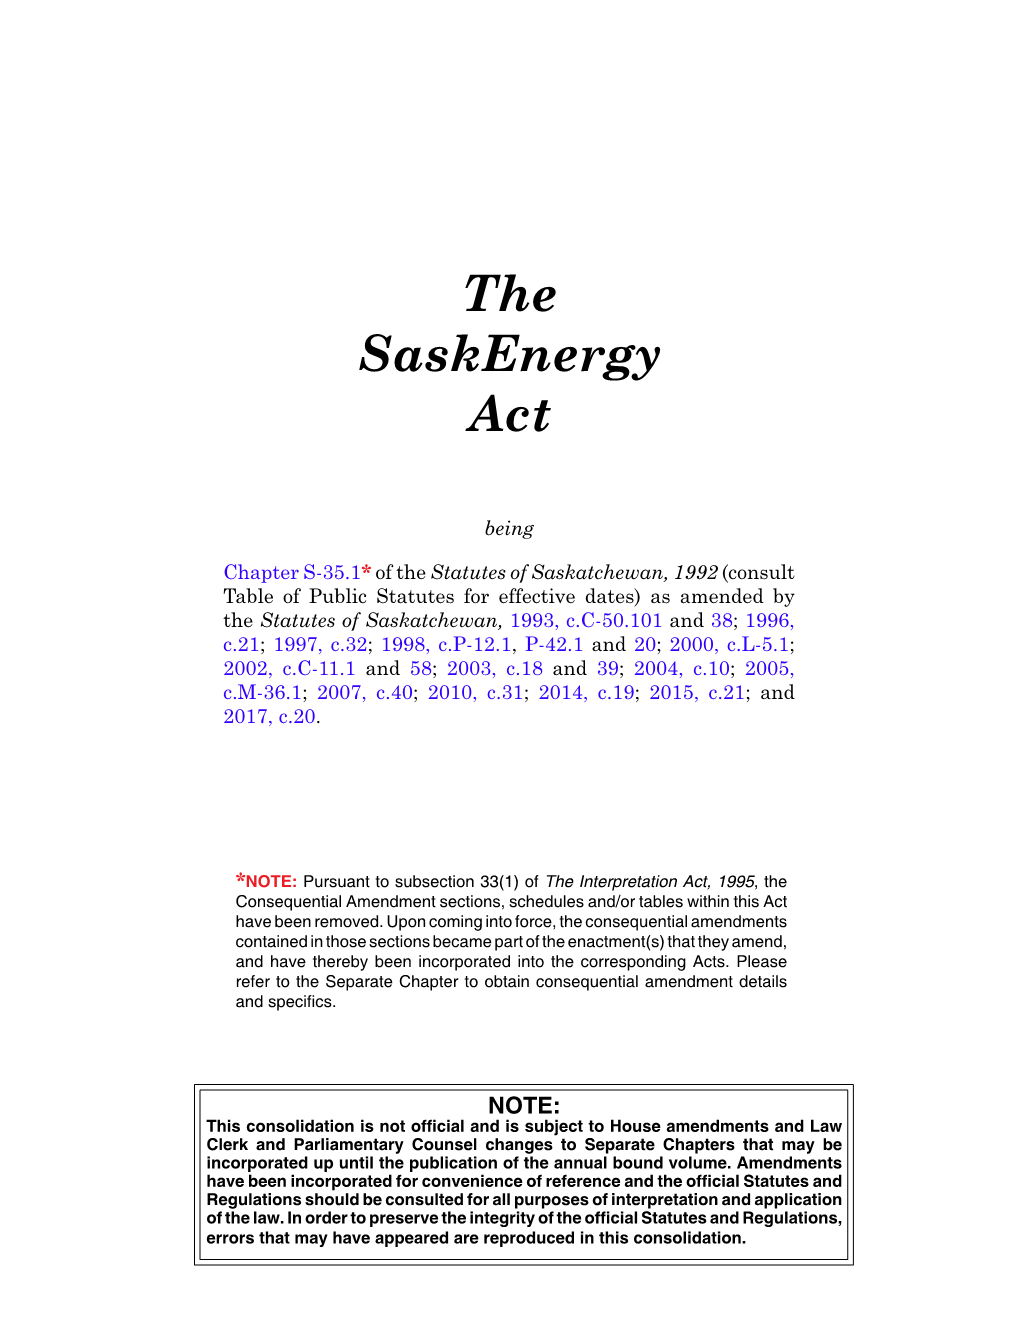 The Saskenergy Act